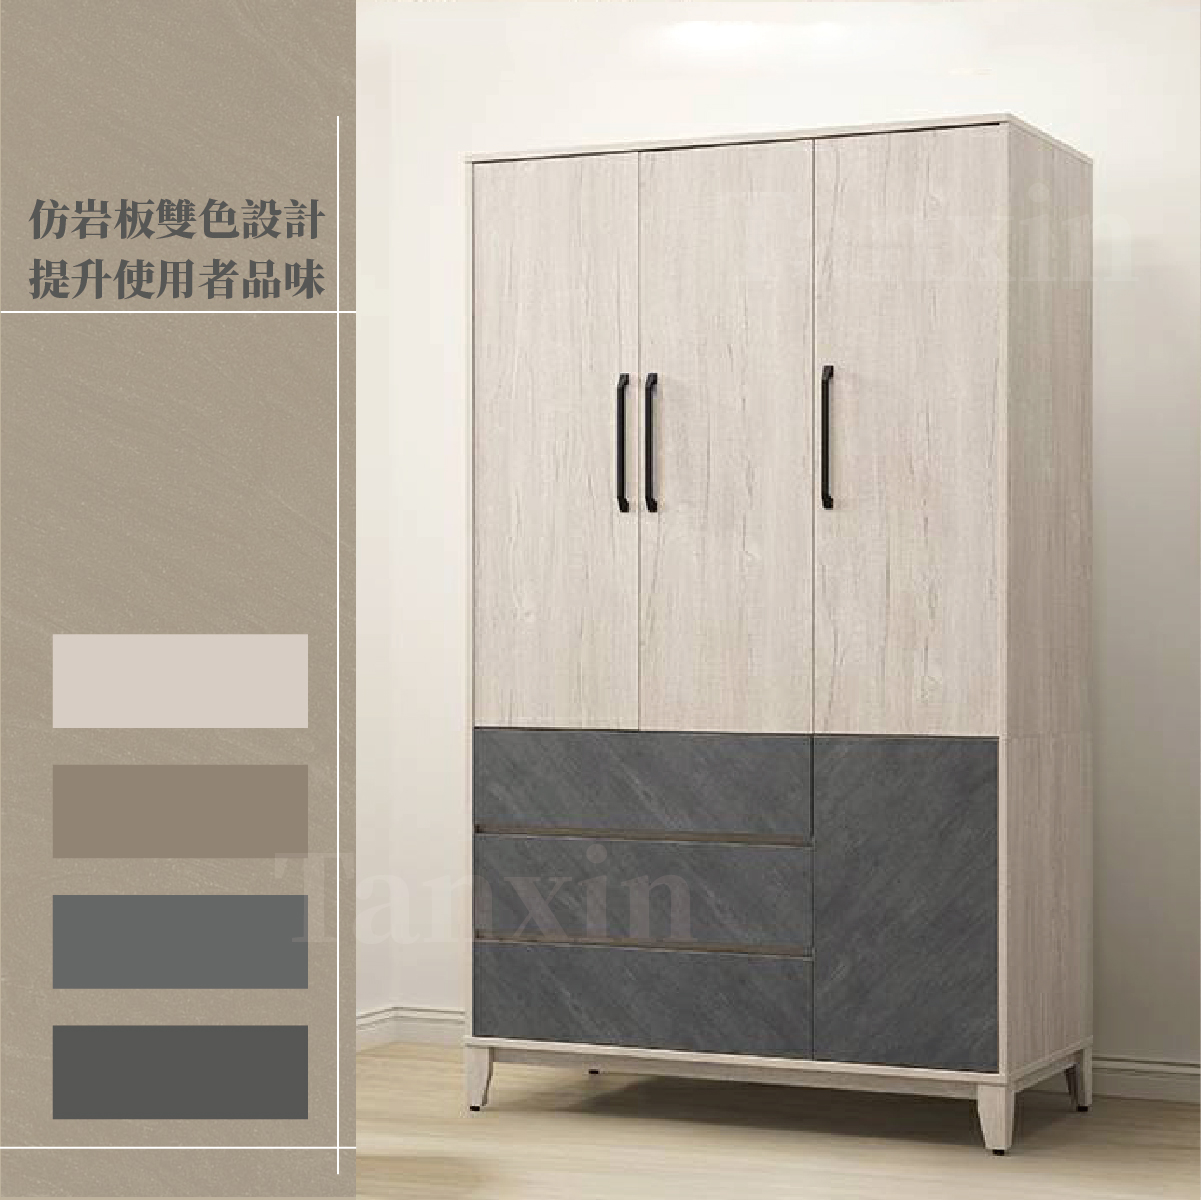 【衣櫃】【添興家具】 CWQ111-15馬汀 衣櫃 |系統封邊仿石面|黑白灰三色可選